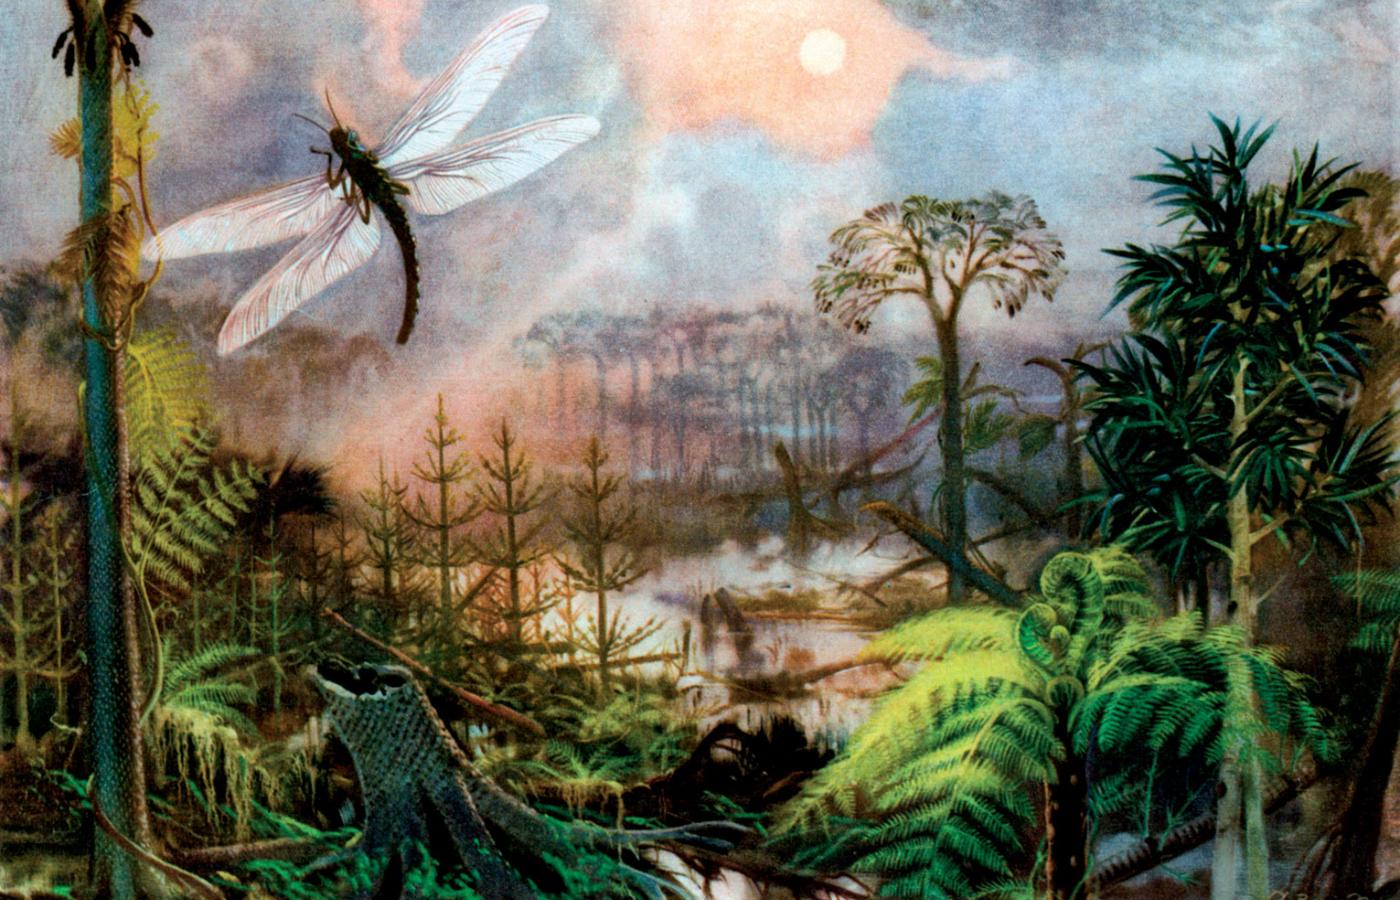 Erą tlenu nazywa się paleozoik – wtedy w powietrzu było go ponad 25 proc. Dzięki czemu ówczesne zwierzęta osiągały ogromne rozmiary.